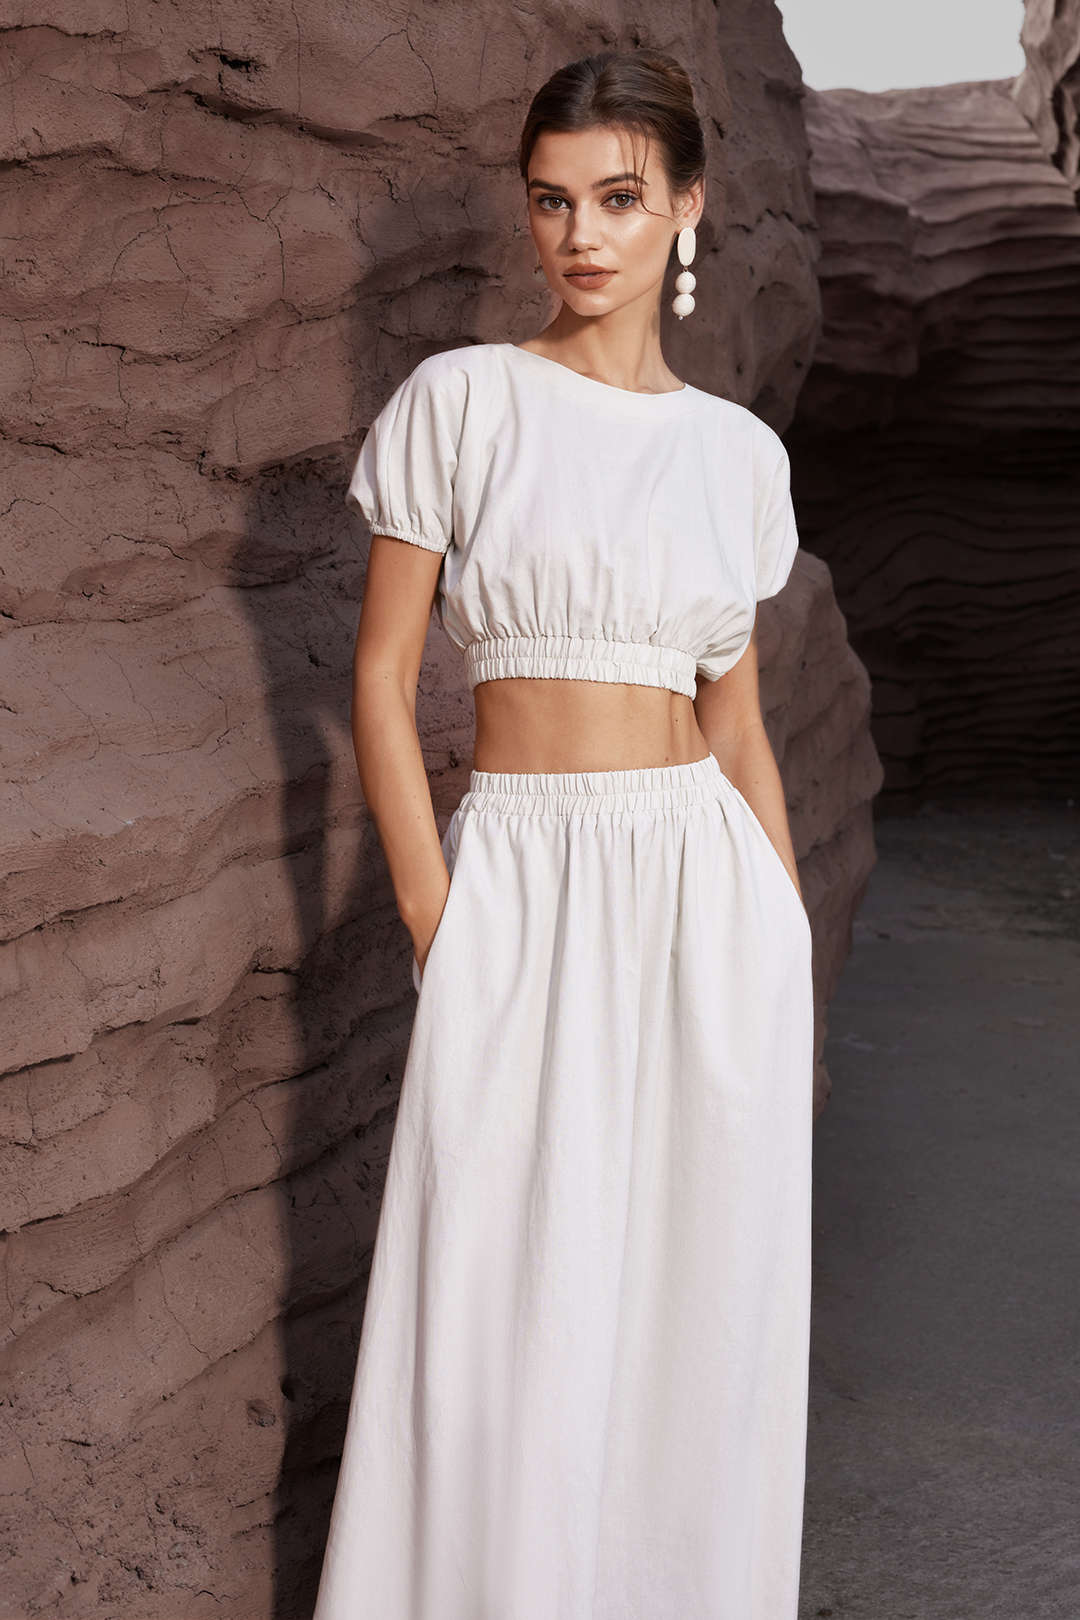 Basic Linen High Waist Maxi Skirt